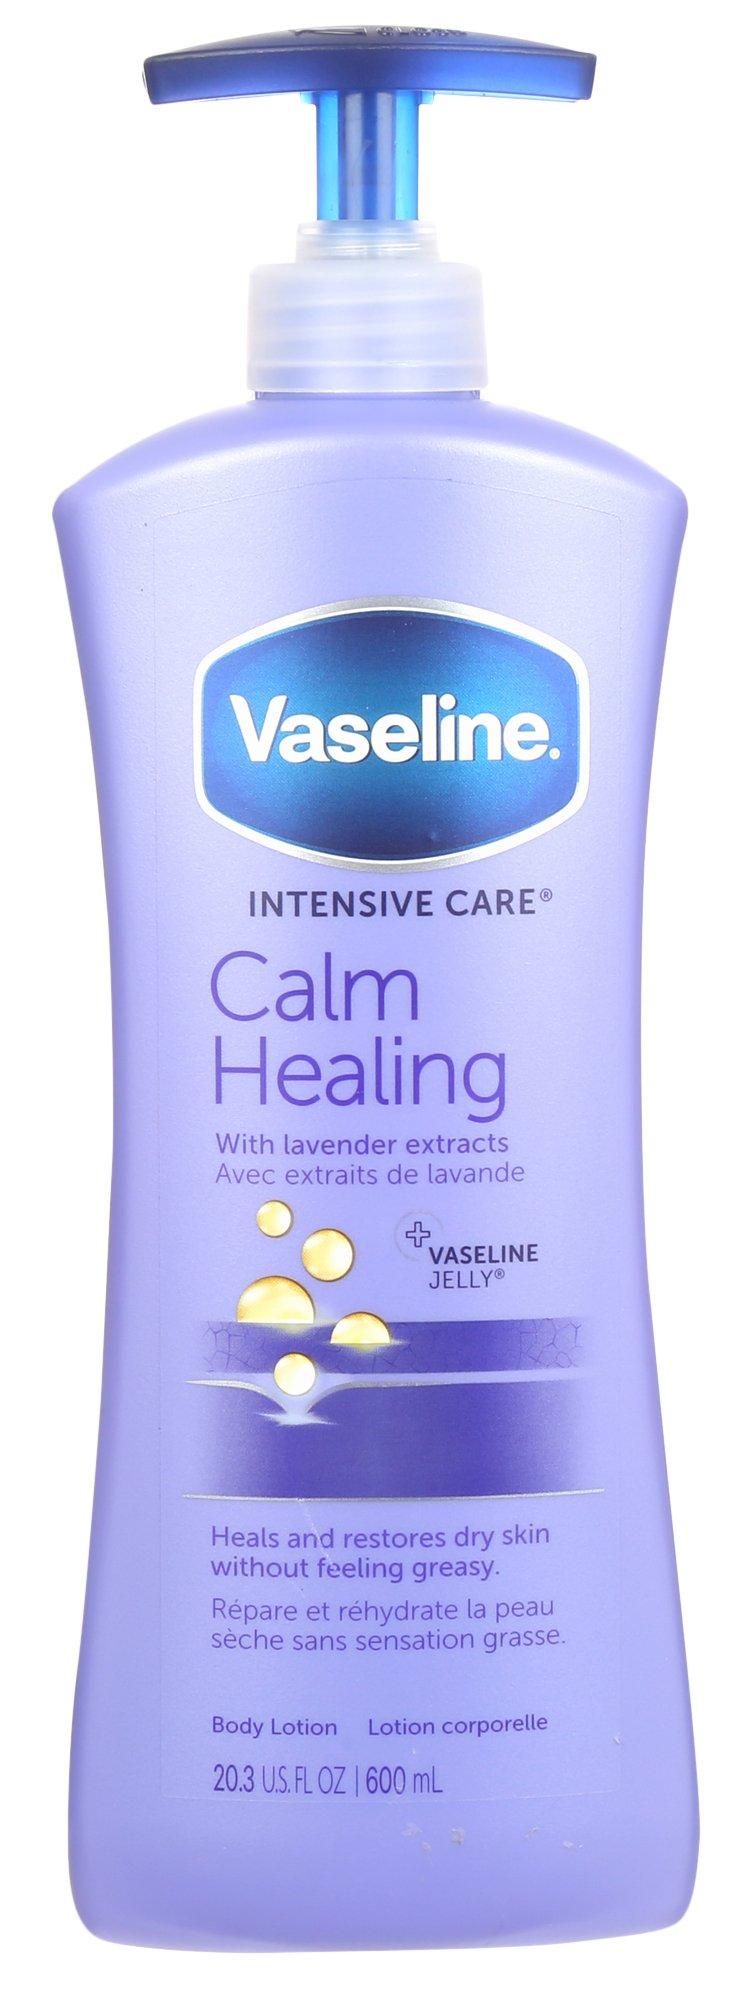 20 oz Calm Healing Lavender Body Lotion